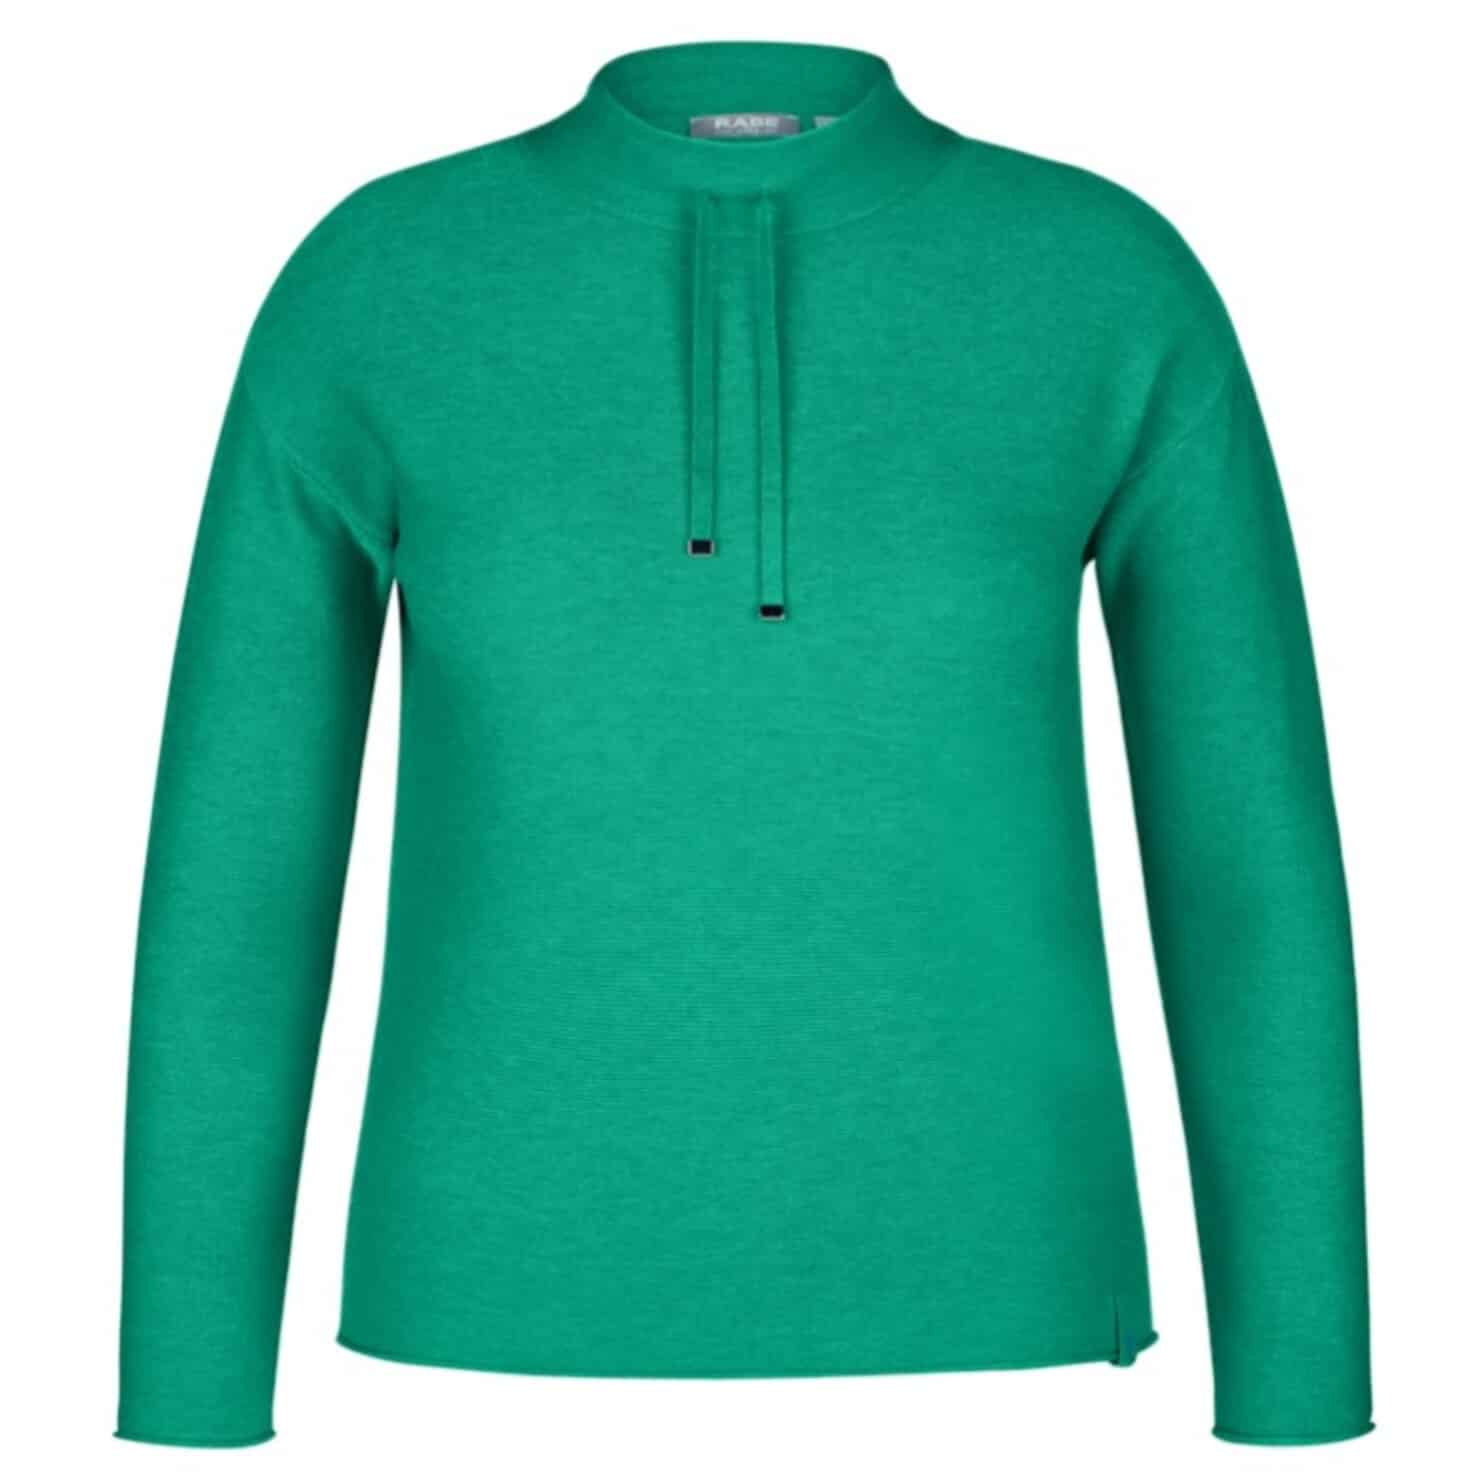 Sportiver Pullover von Rabe Moden in angesagtem grün oder türkis bei Mode Sabine Lemke in Winnenden im Remstal oder im Onlineshop einkaufen